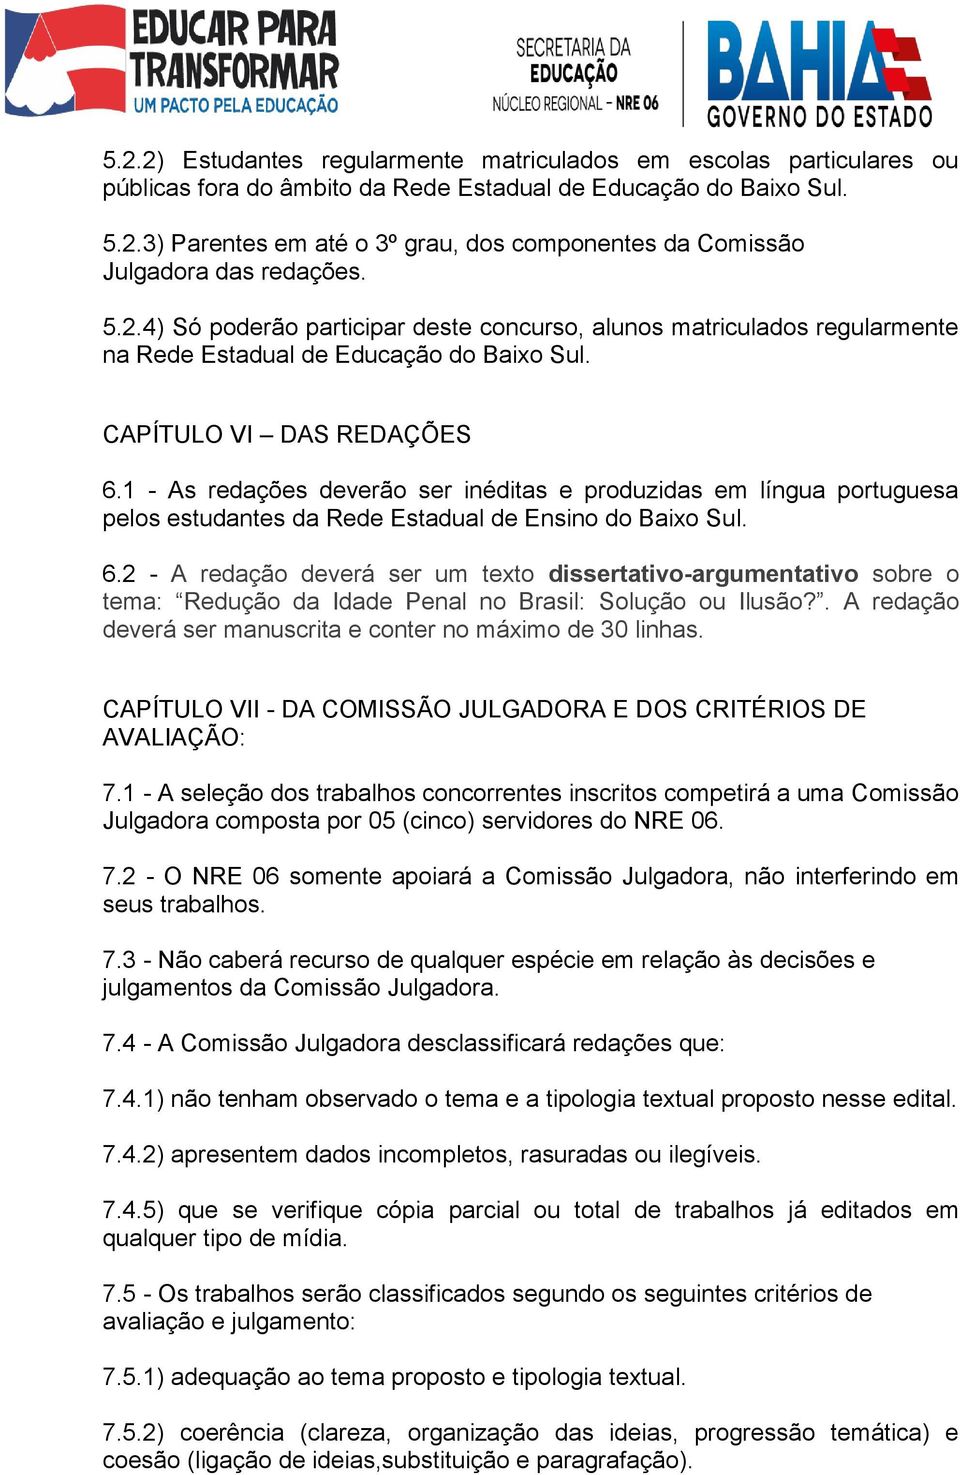 1 - As redações deverão ser inéditas e produzidas em língua portuguesa pelos estudantes da Rede Estadual de Ensino do Baixo Sul. 6.